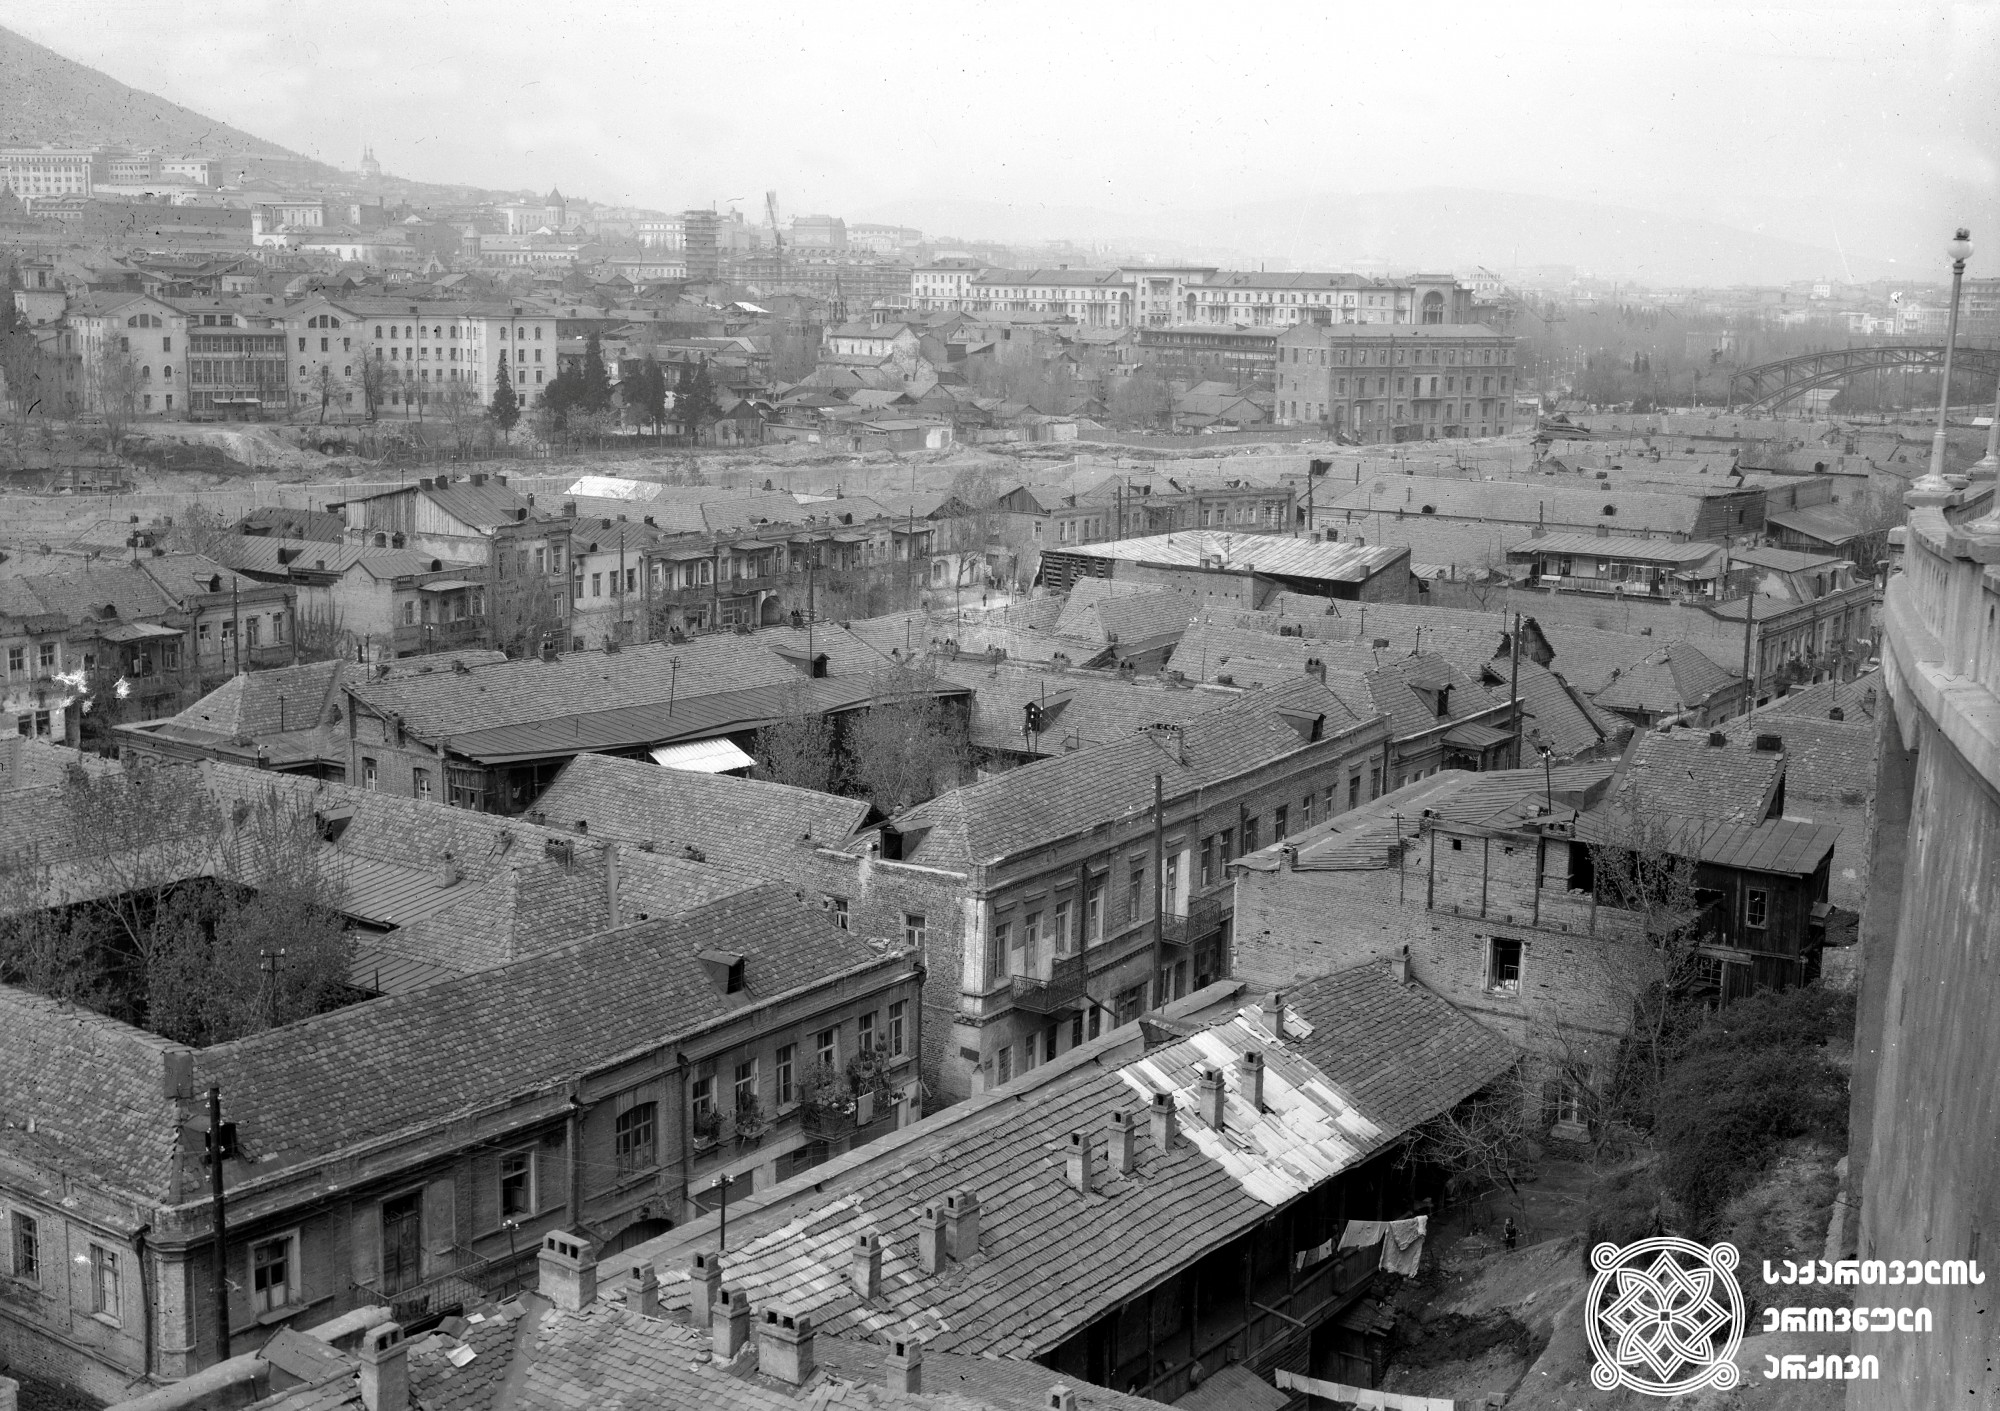 ძველი განაშენიანება რიყეზე. თბილისი. <br> ავტორი უცნობია. [1911-1965]. <br>
Old construction on Rike. Tbilisi. <br> Unknown photographer. [1911-1965].